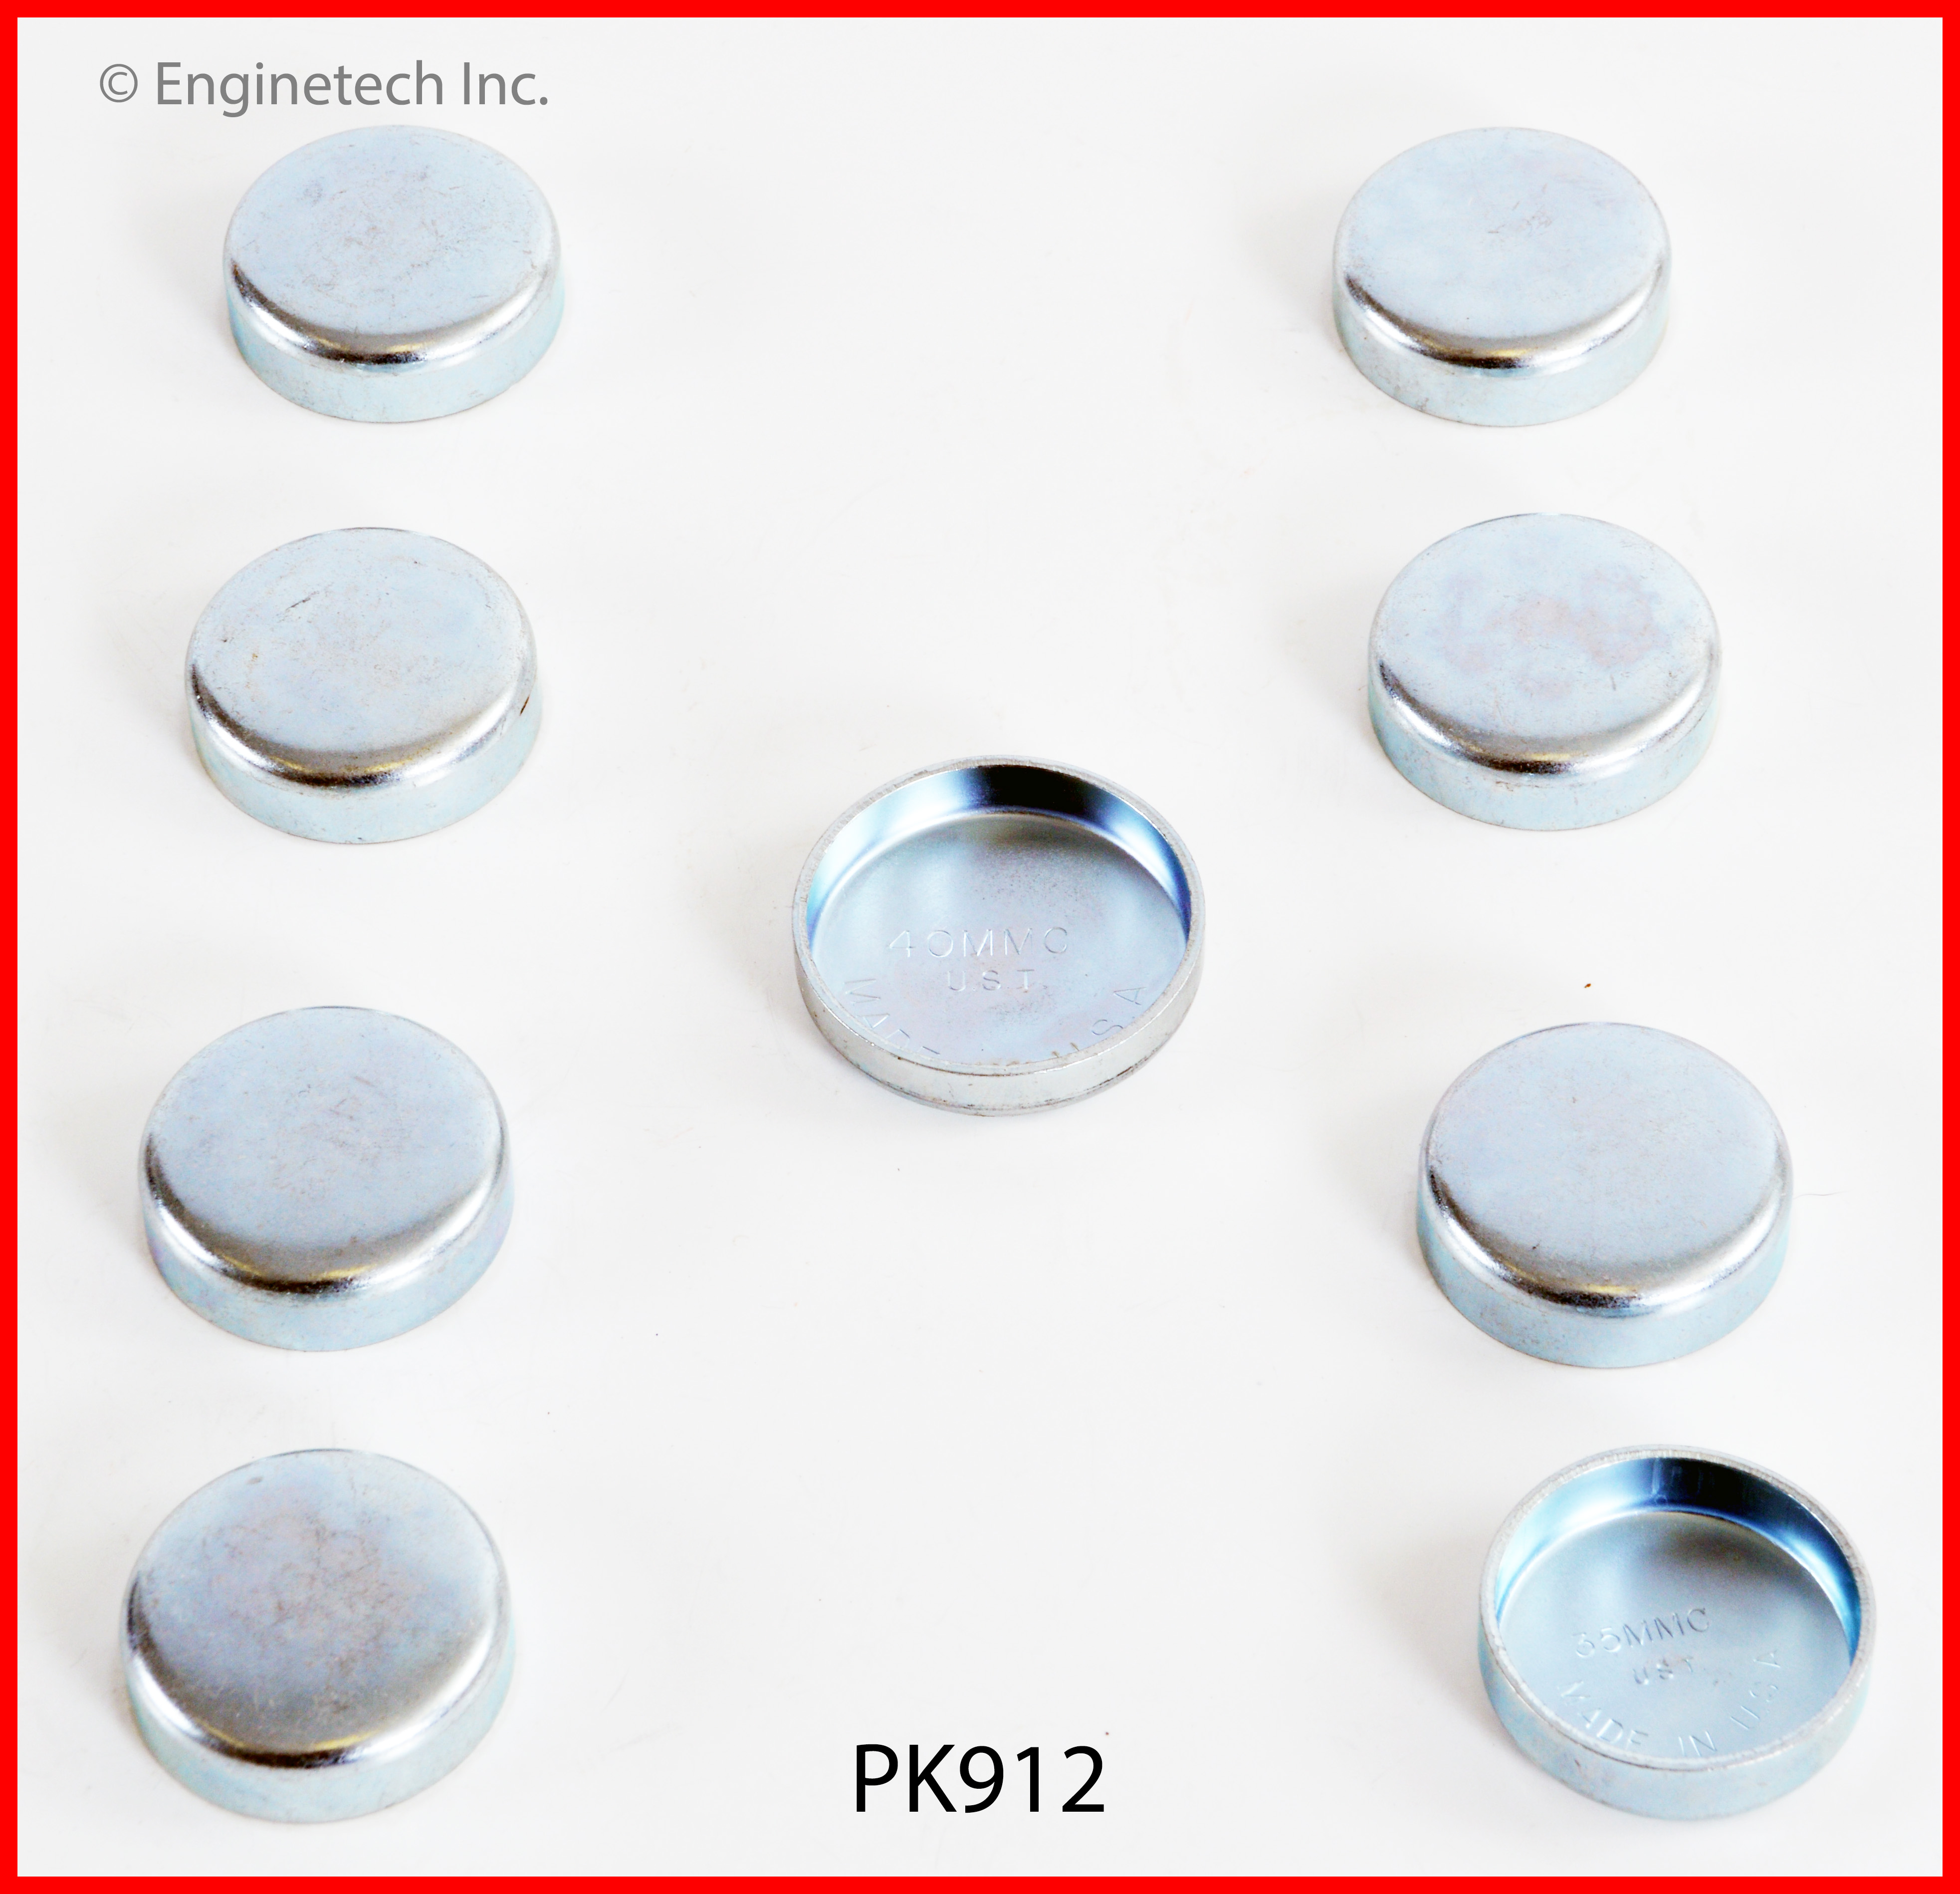 PK912 Expansion Plug Kit Enginetech